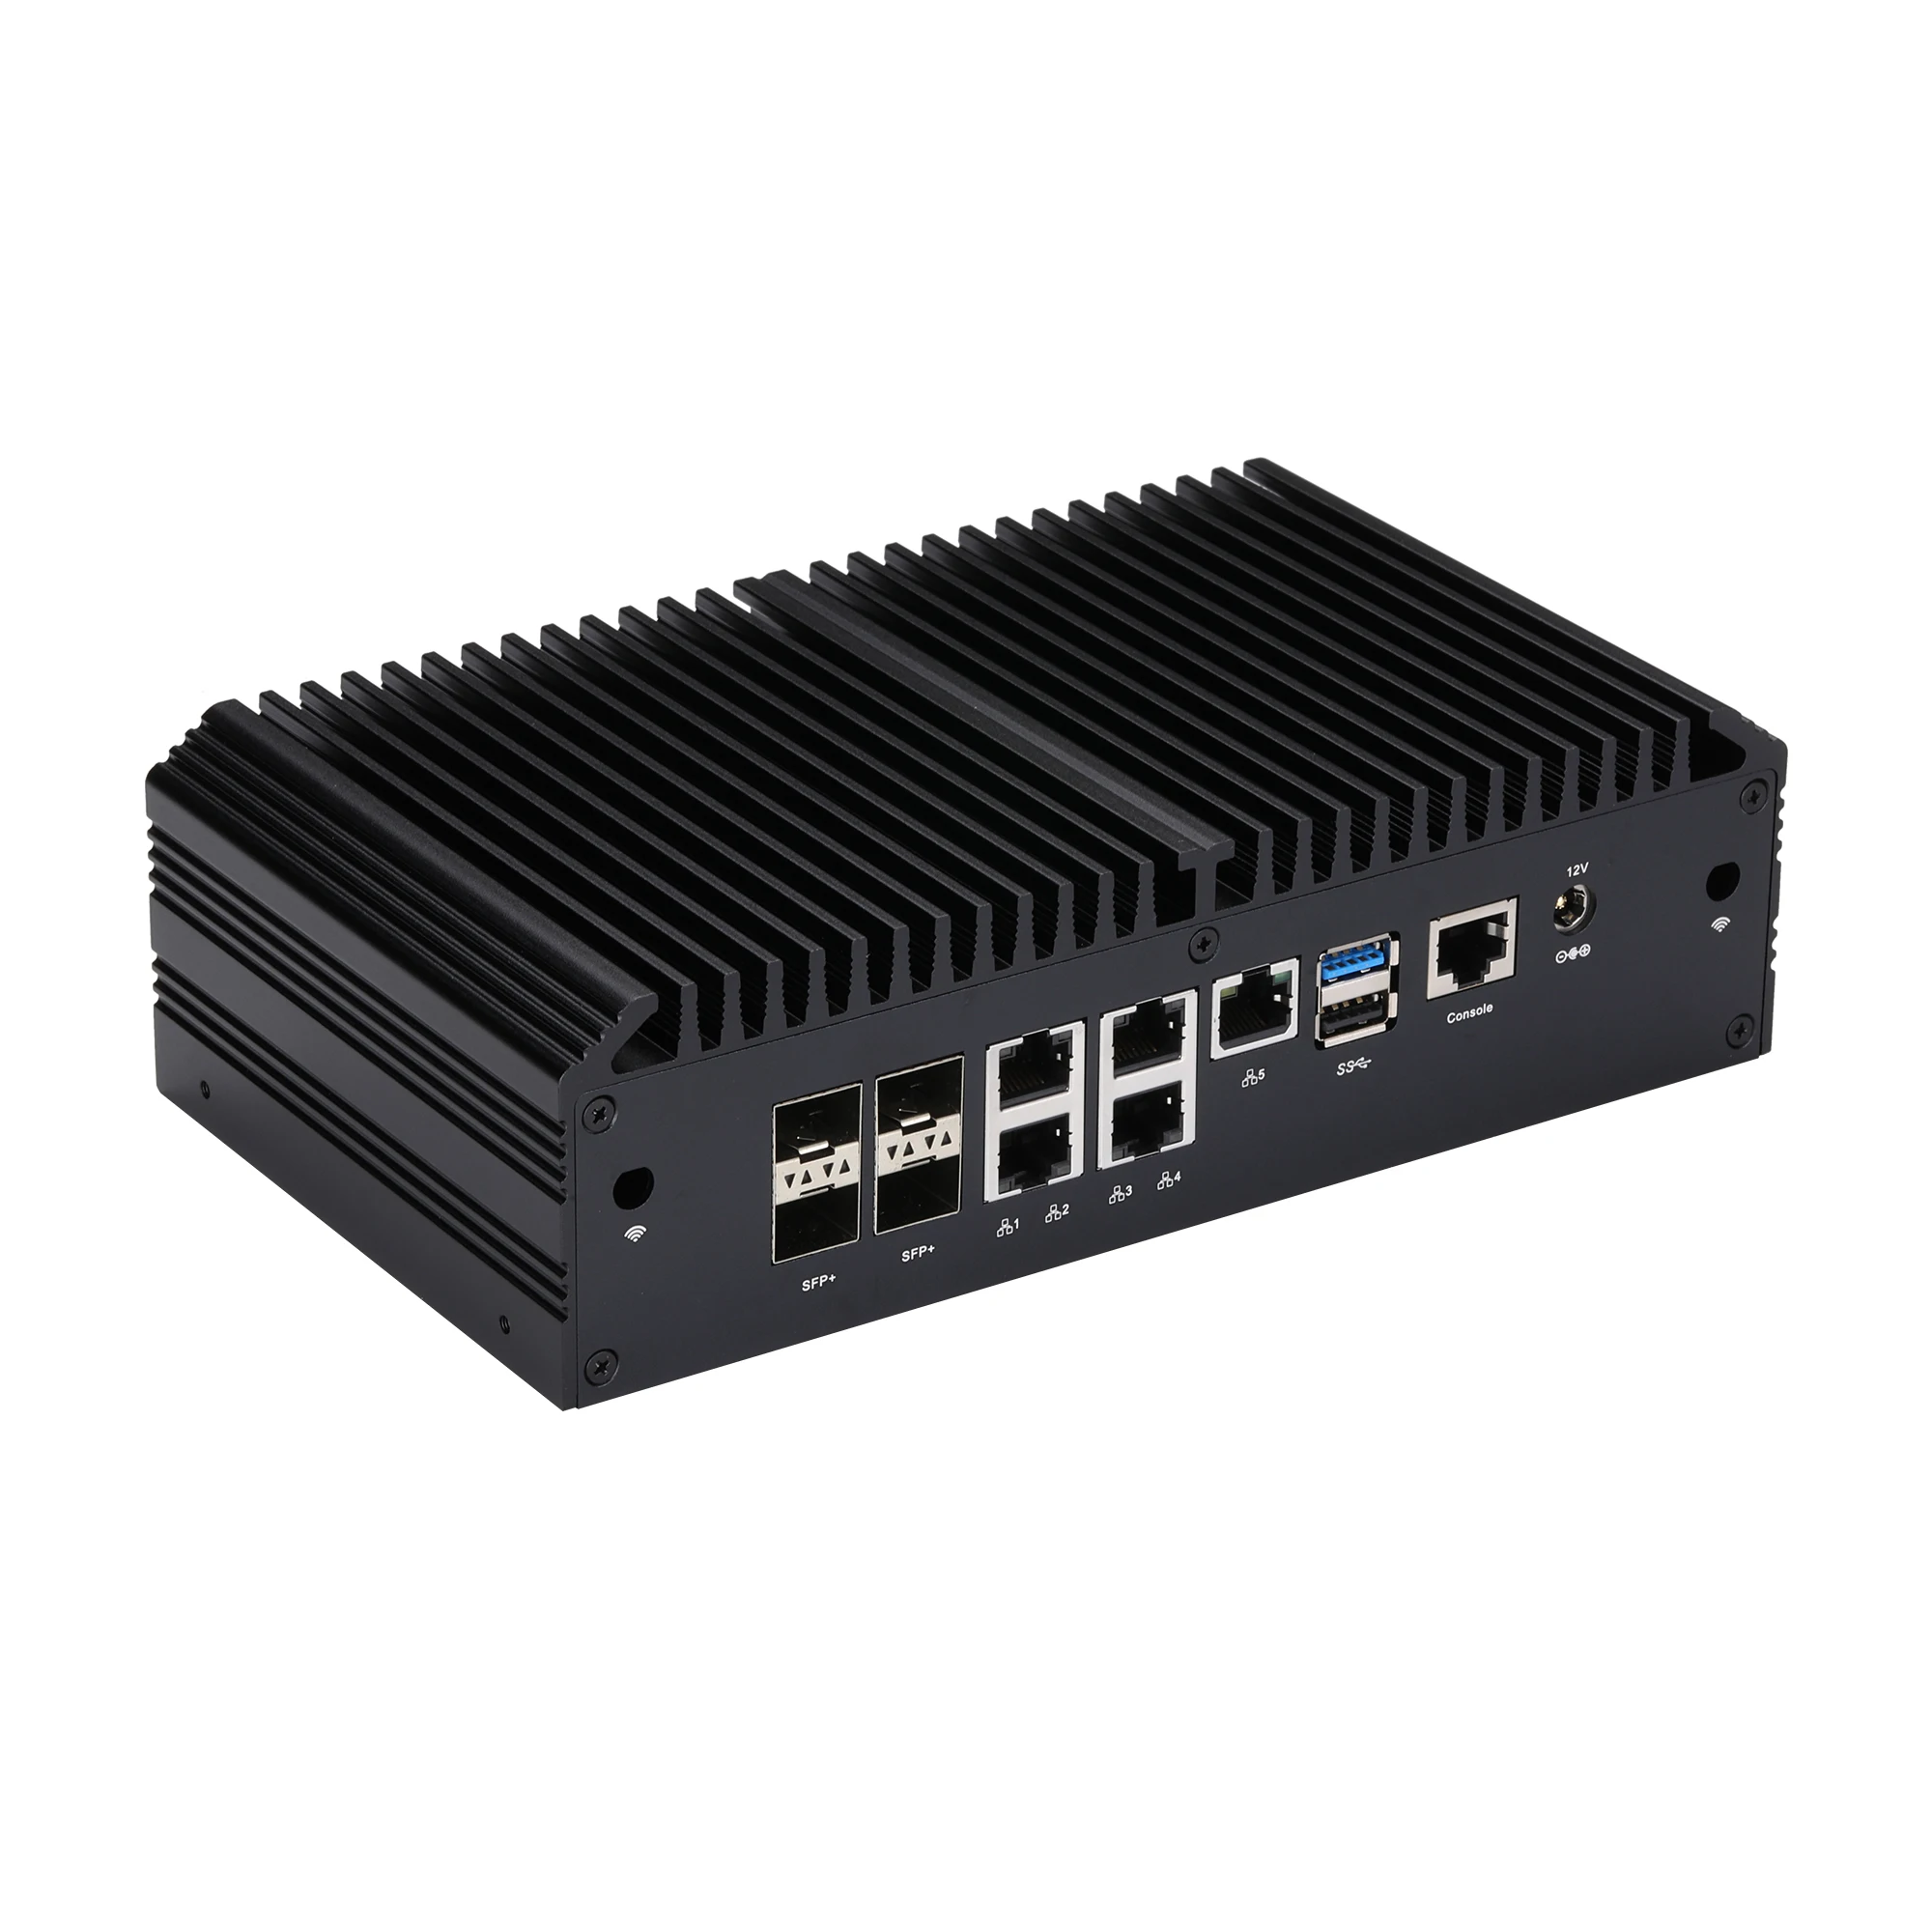 QOTOM Fanless Home Serve Router Q20331G9 Q20332G9 Processor Atom C3758R C3758 AES-NI Firewall - 5x 2.5G LAN 4x 10GbE SFP+